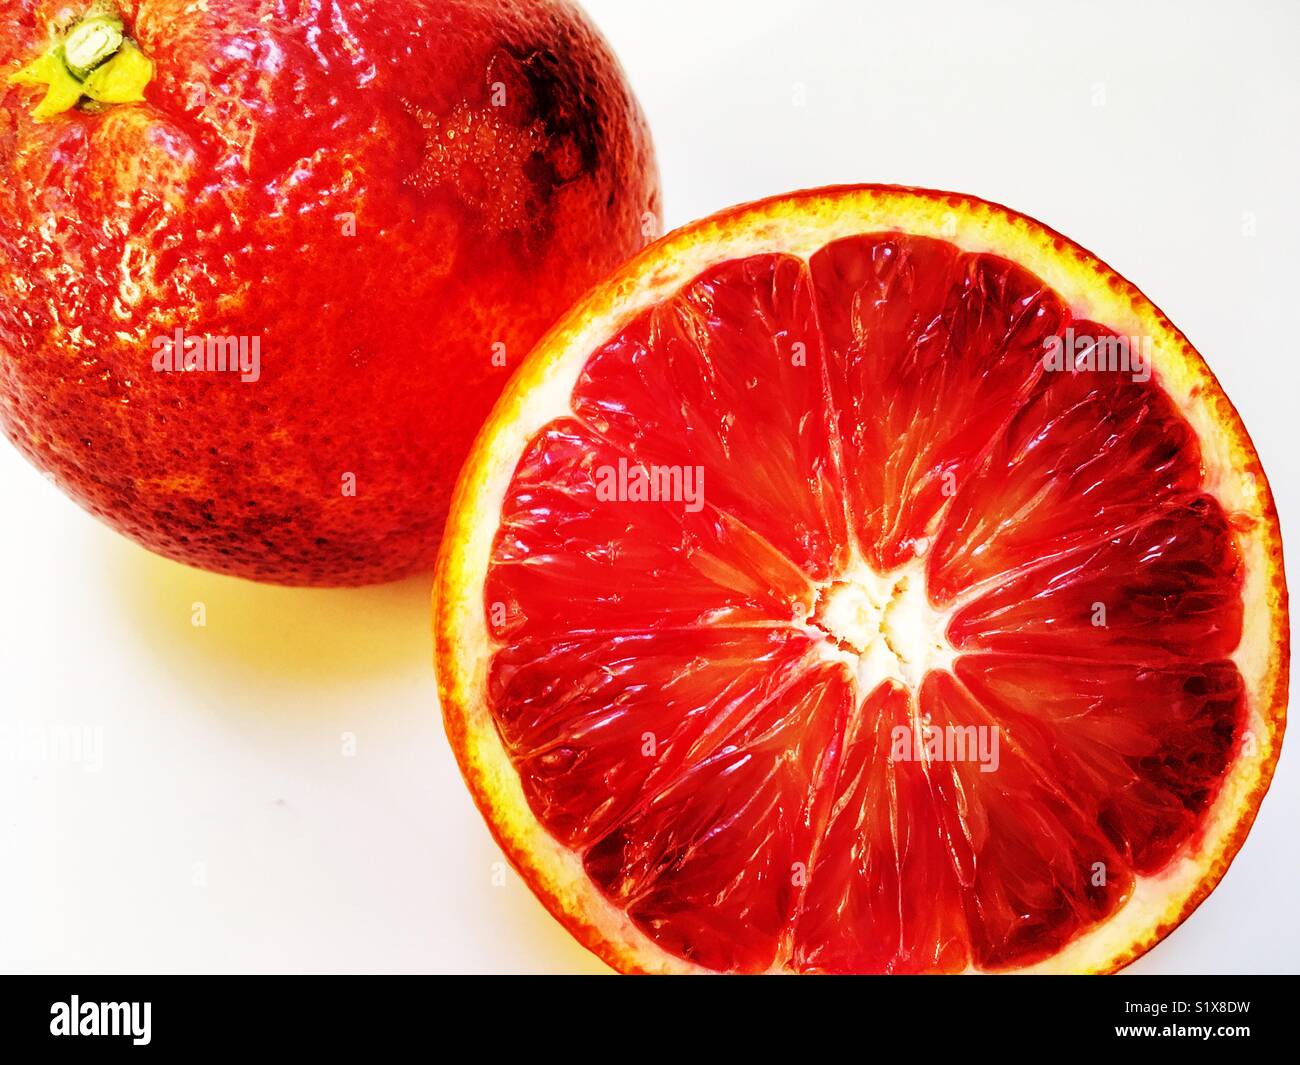 Ippolito oranges Stock Photo